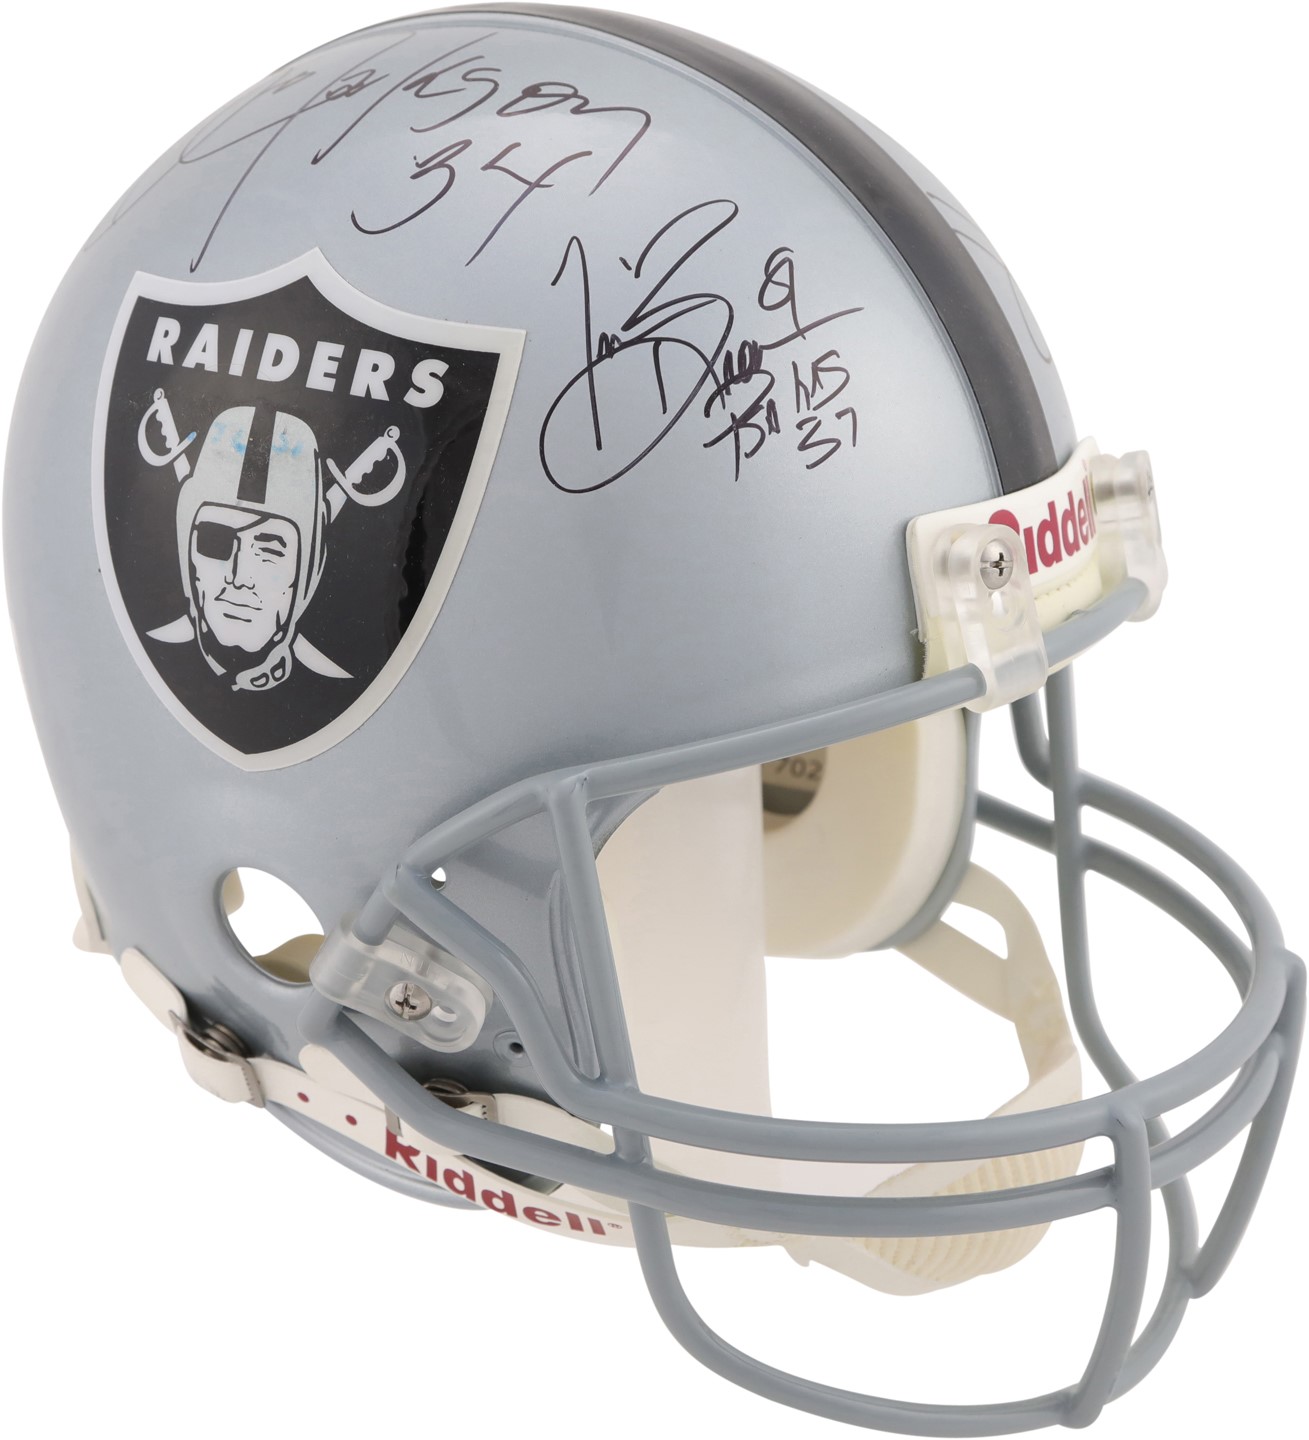 Raiders Legends Signed Helmet